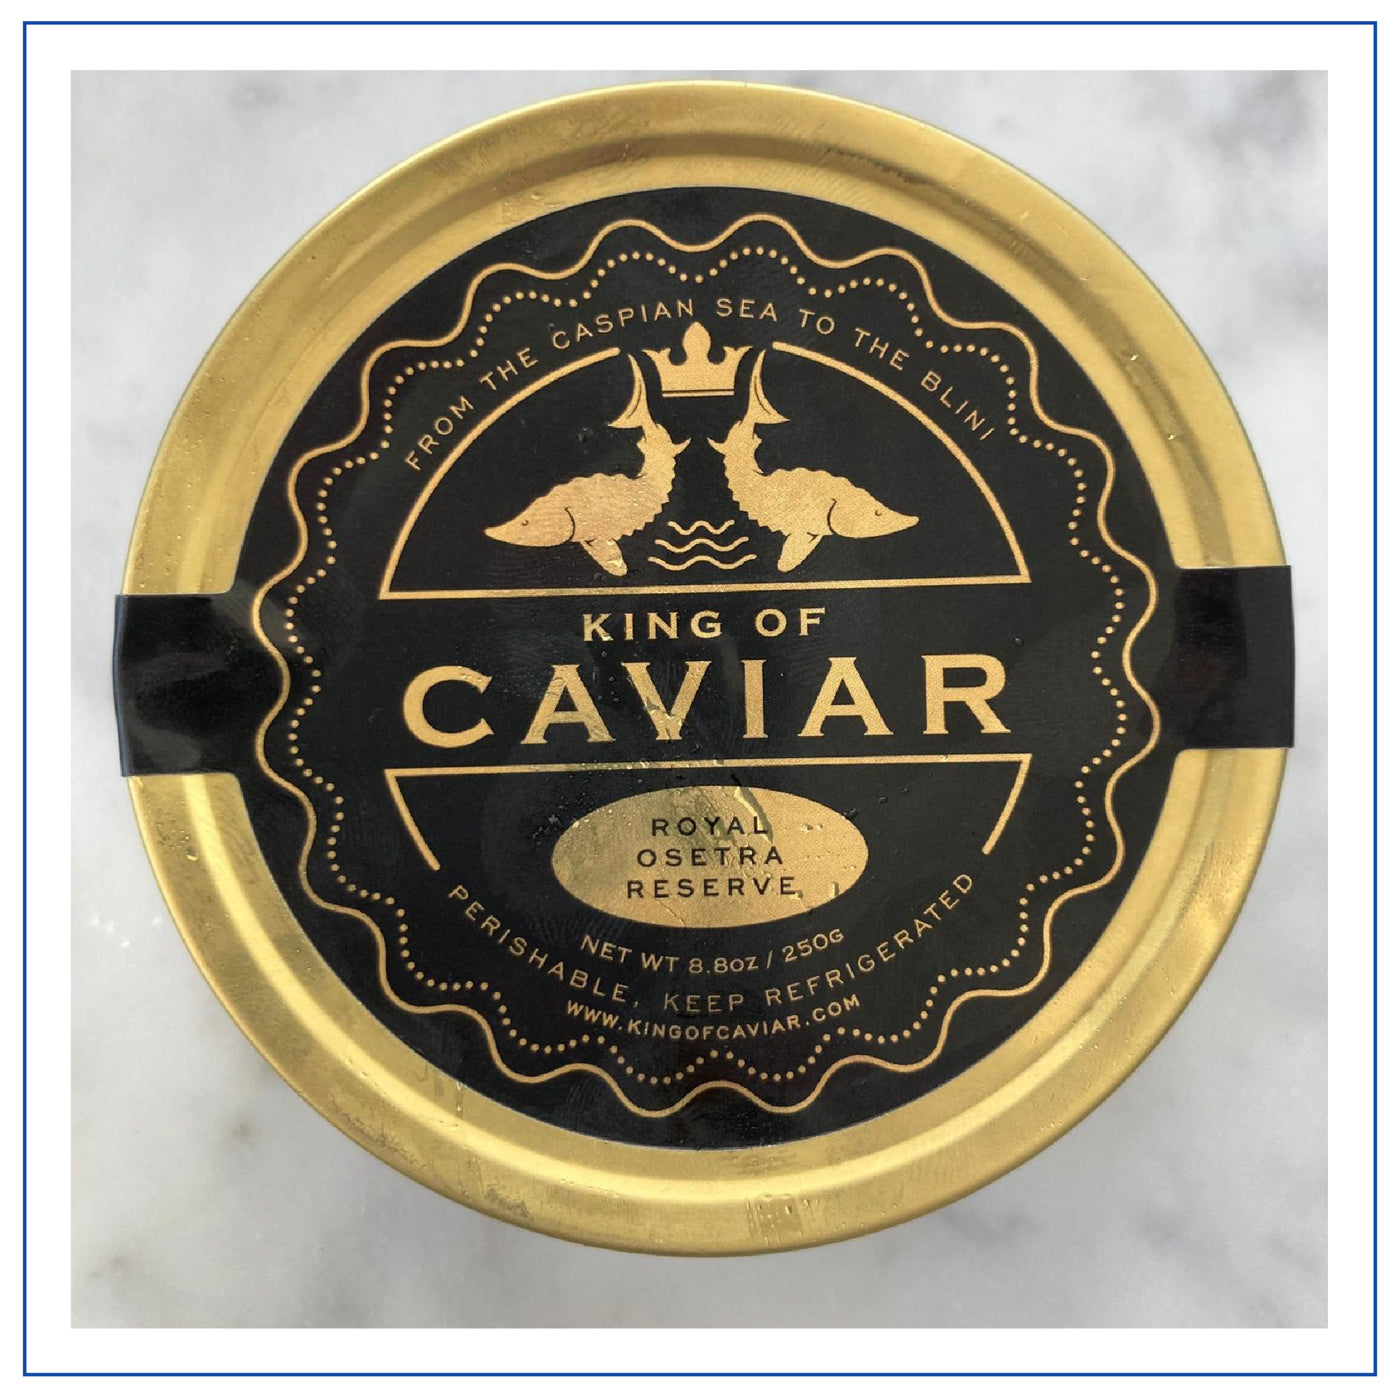 Caviar Royal osetra reserve